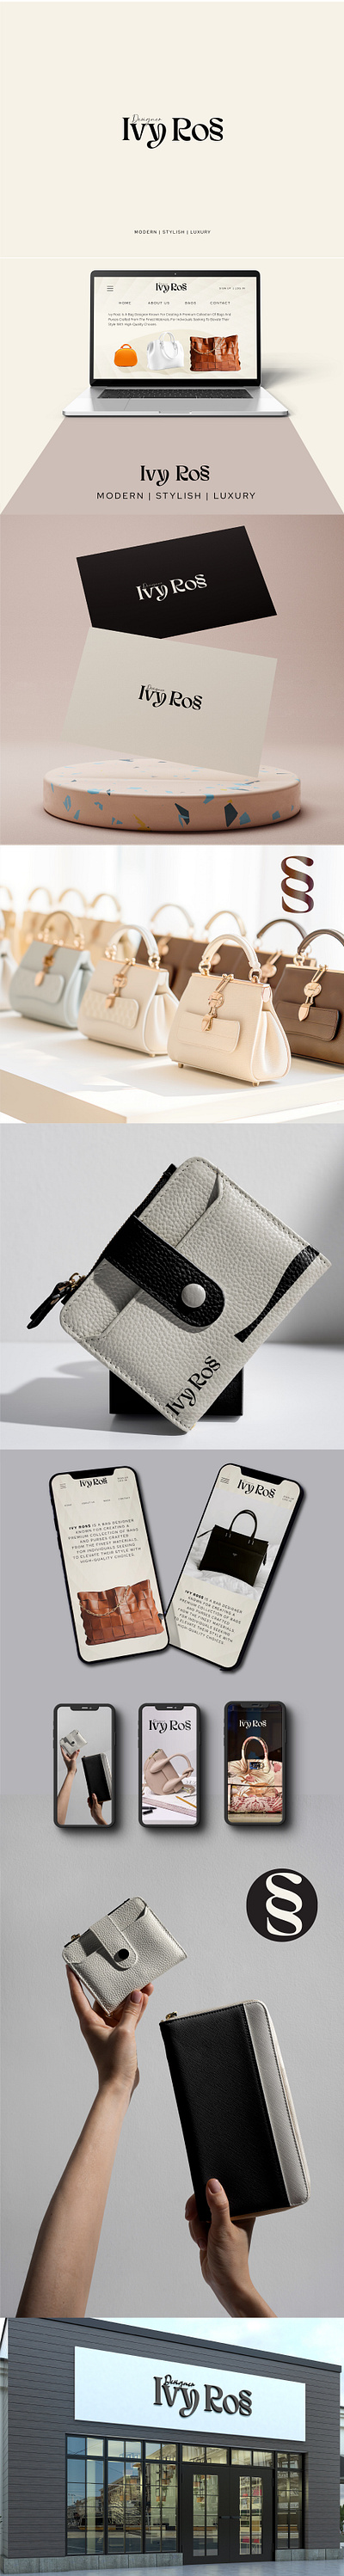 IVY ROSS - DESIGNER BAGS 3d bags branding logo purse website